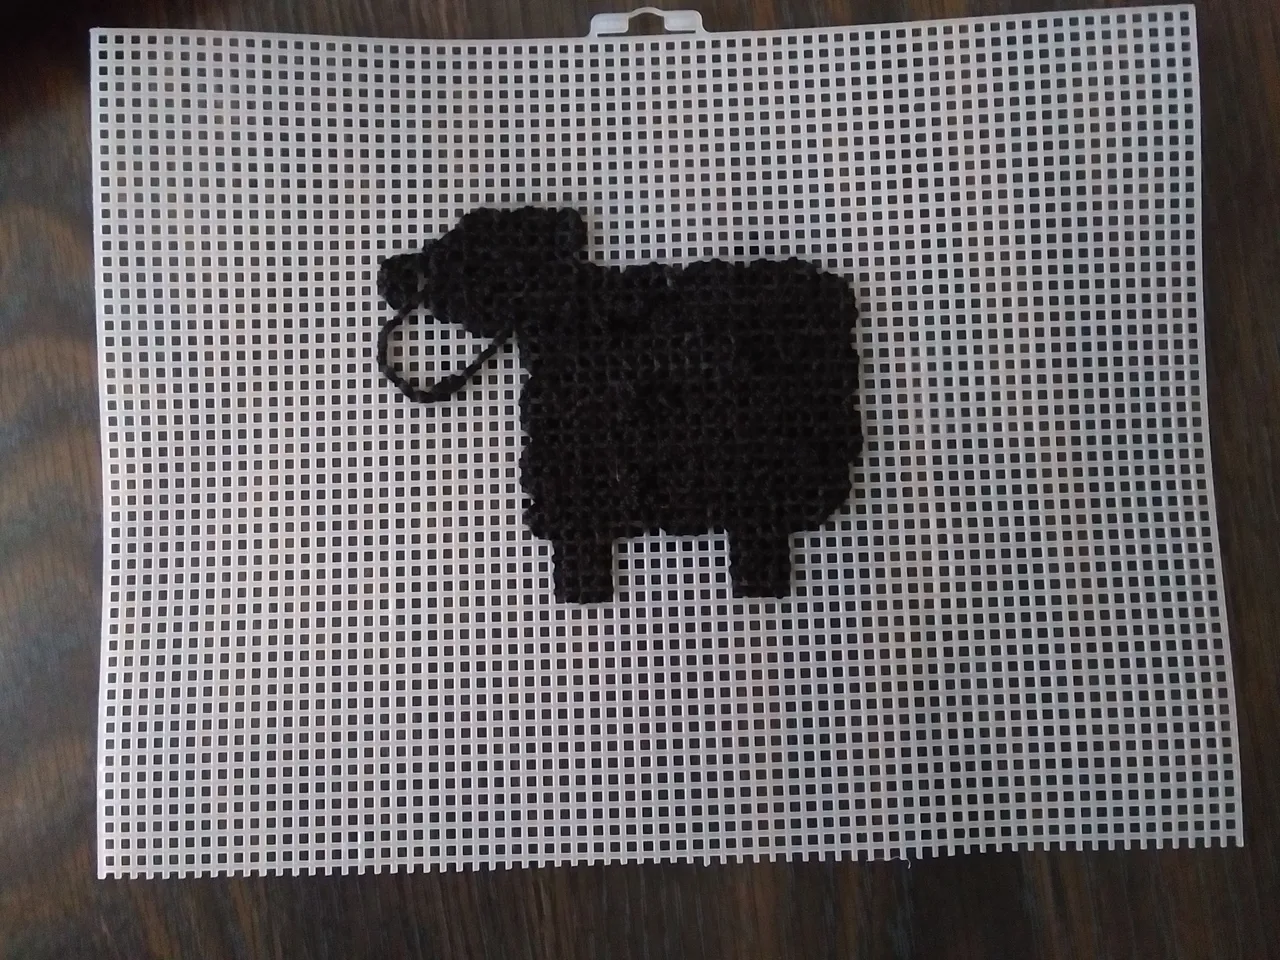 black sheep 1.jpg